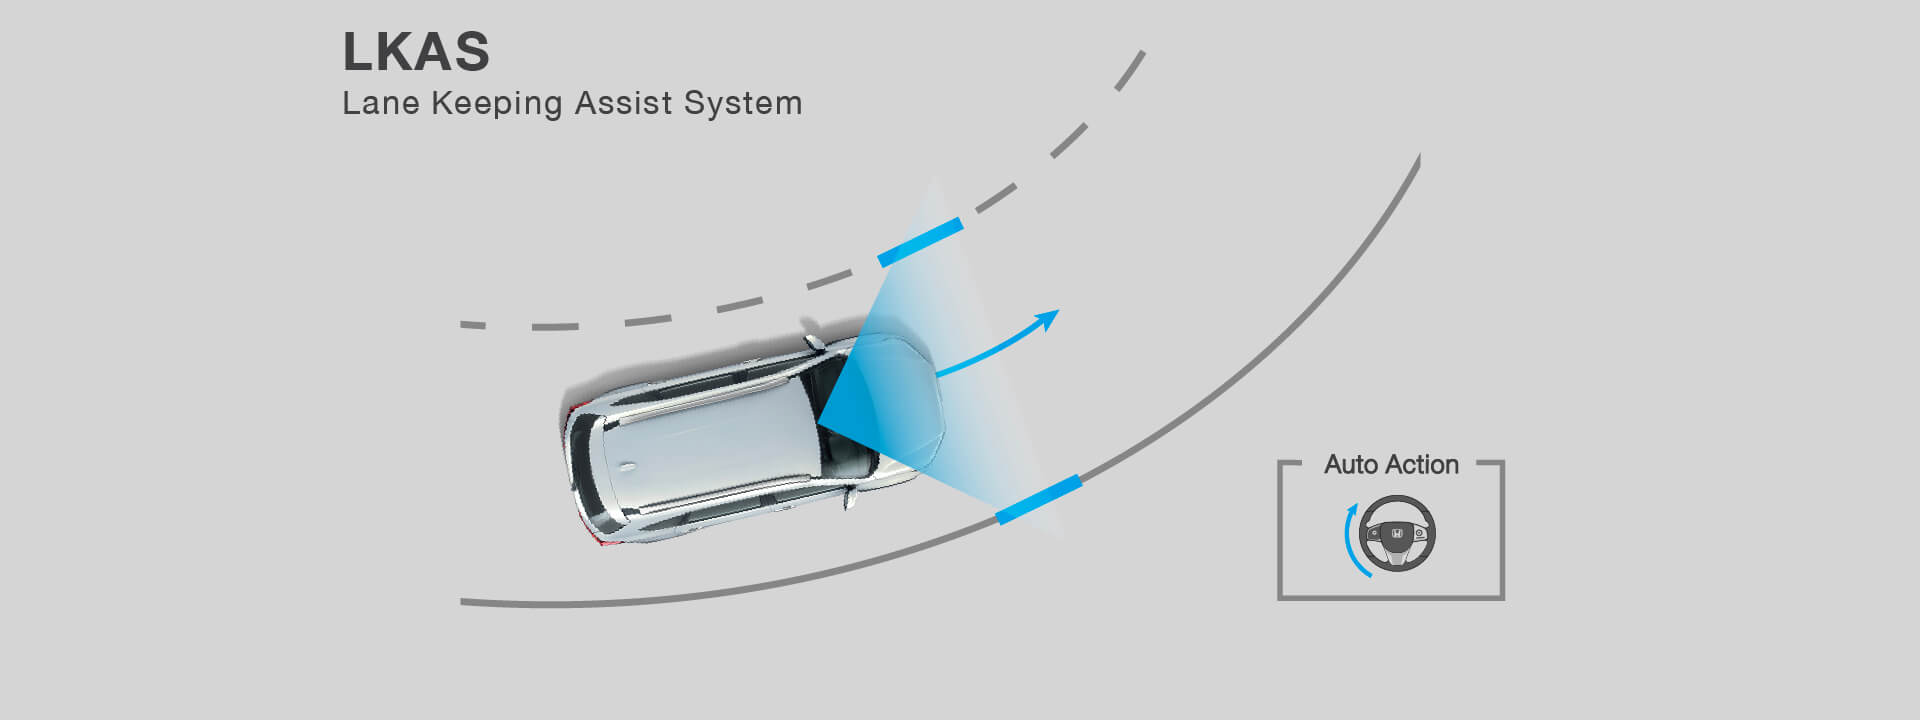 Lane Keeping Assist System : LKAS ระบบช่วยควบคุมให้อยู่ในช่องทางเดินรถ